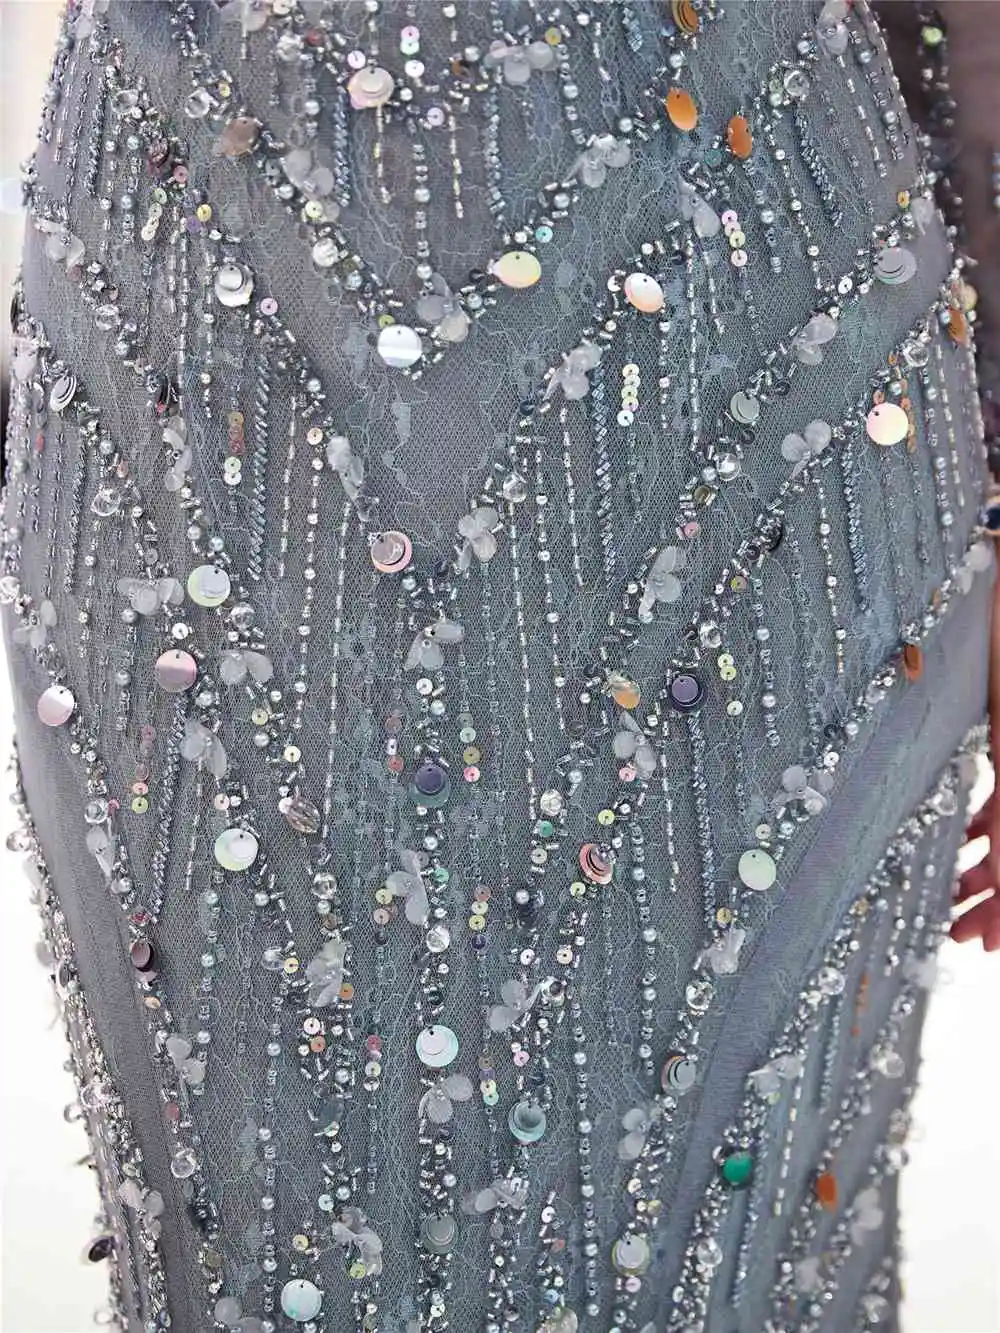 CEEWHY Sequinated Русалка платье с длинным рукавом Роскошные вечерние платья из бисера кружево Элегантные вечерние платья плюс размеры халат de Soiree